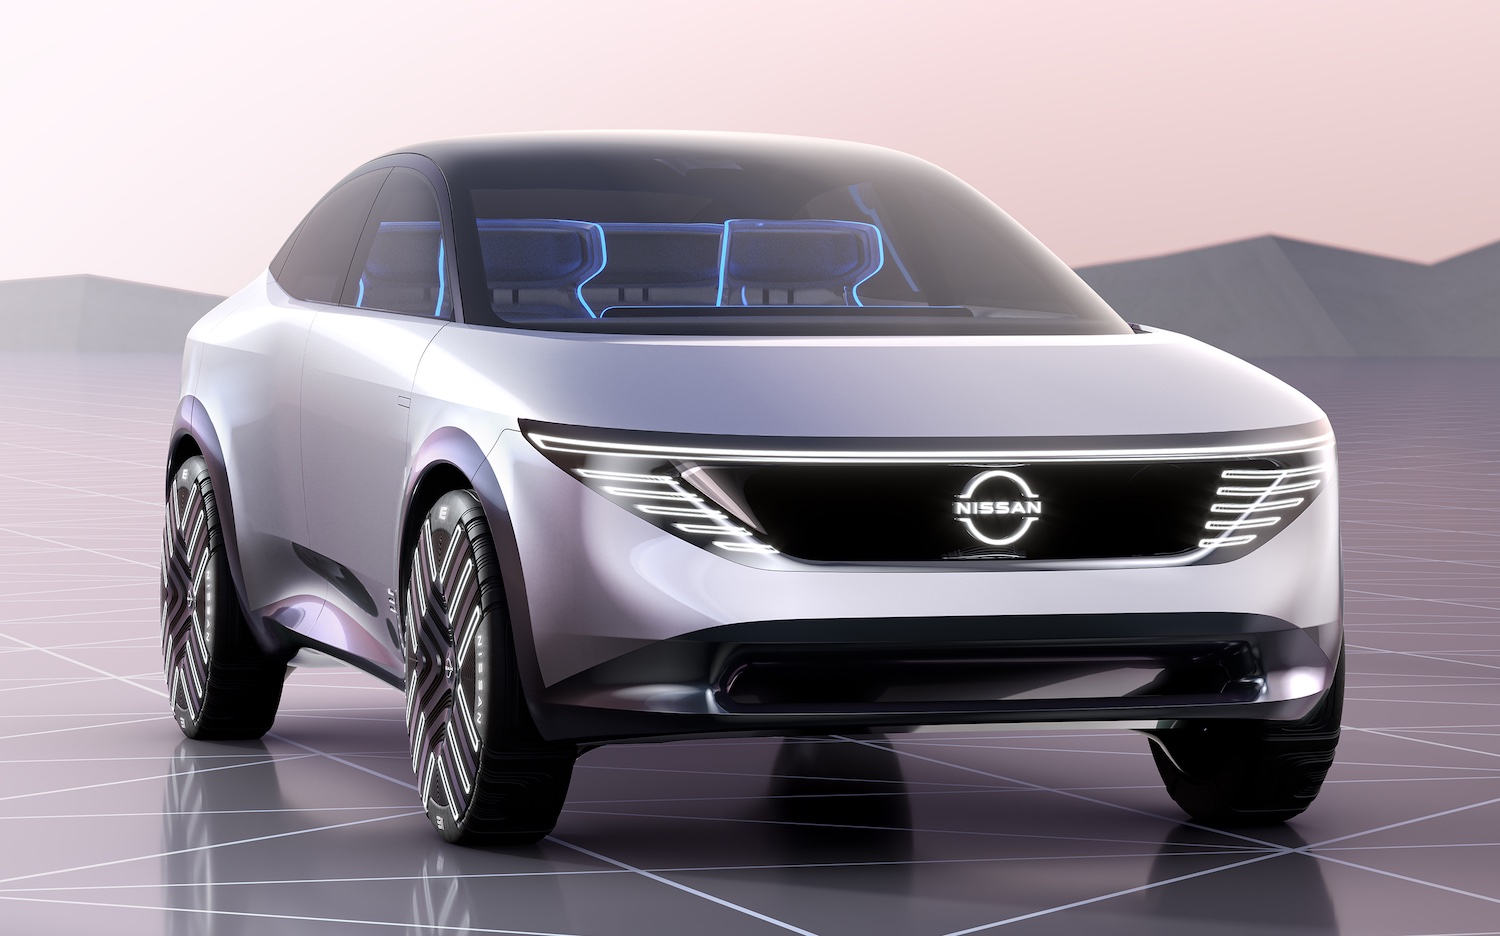 Calendrier des nouveautés – Toutes les futures Nissan électriques : Leaf, Juke, Qashqai…